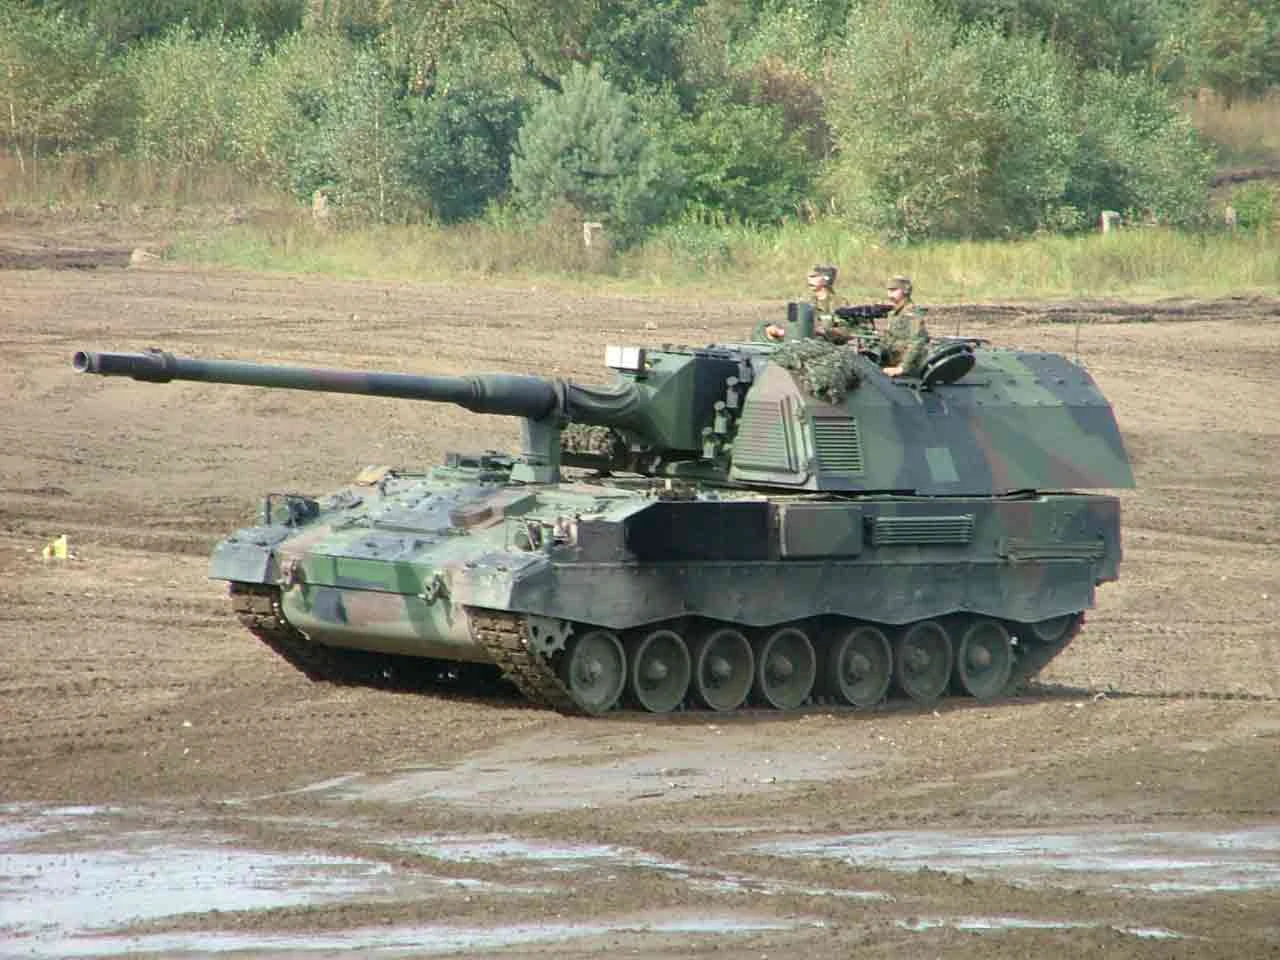 PzH 2000, або Panzerhaubitze 2000